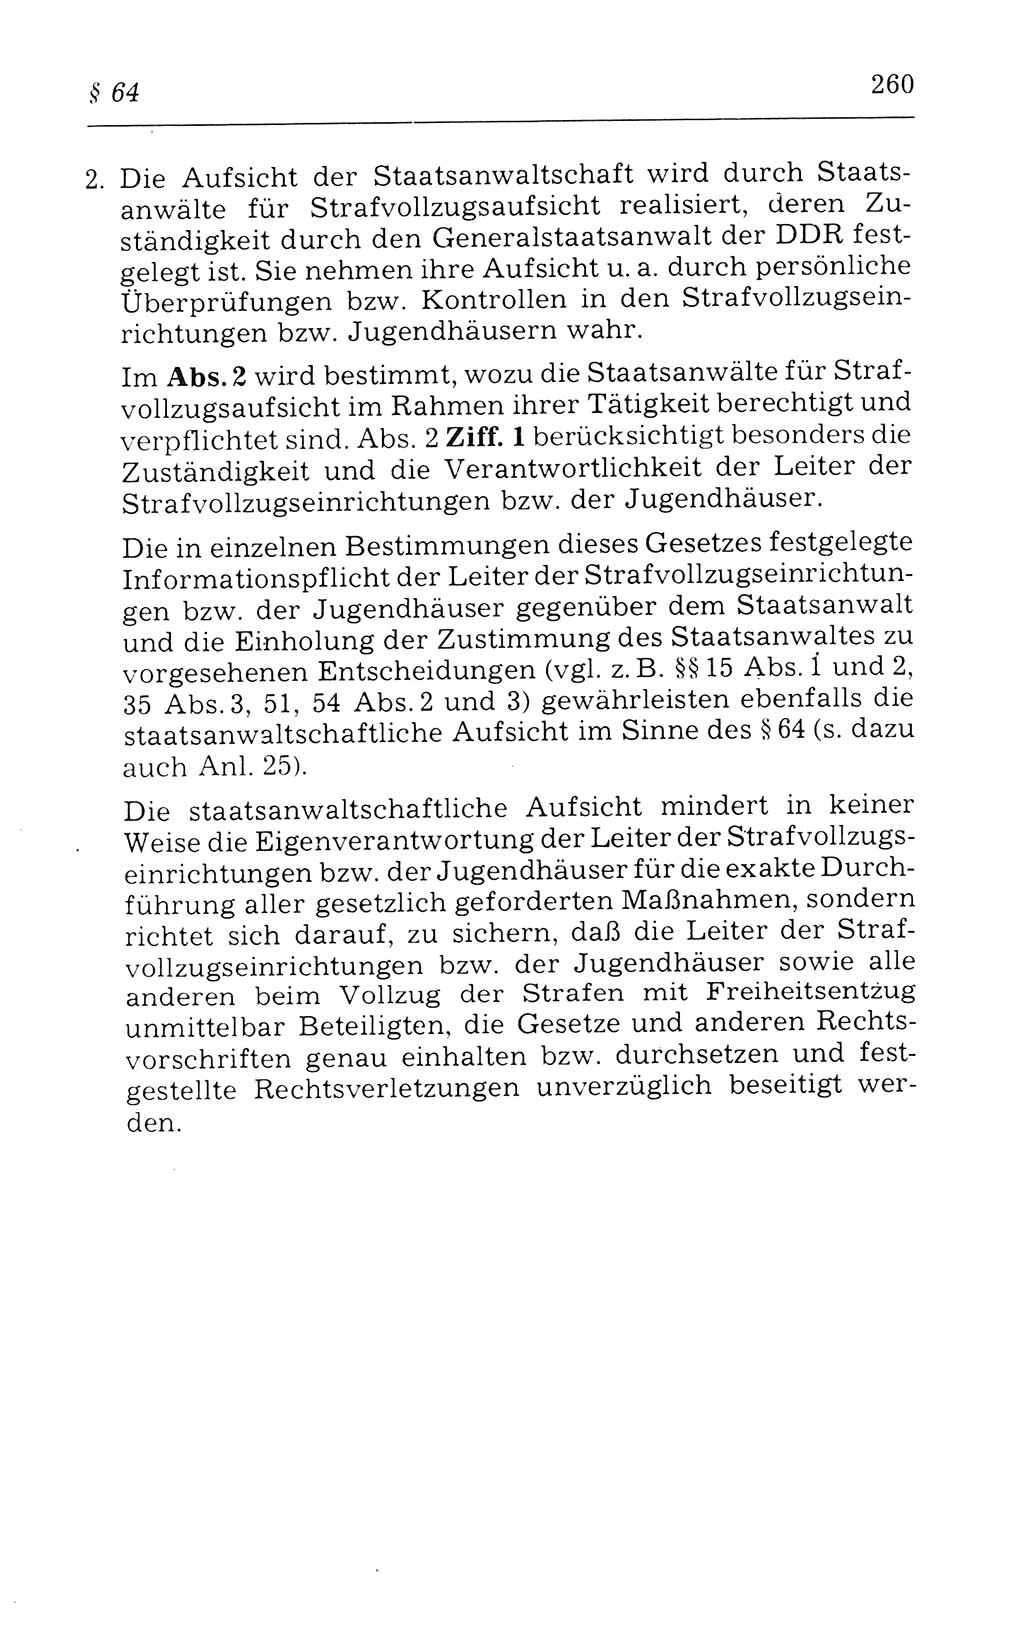 Kommentar zum Strafvollzugsgesetz [(StVG) Deutsche Demokratische Republik (DDR)] 1980, Seite 260 (Komm. StVG DDR 1980, S. 260)